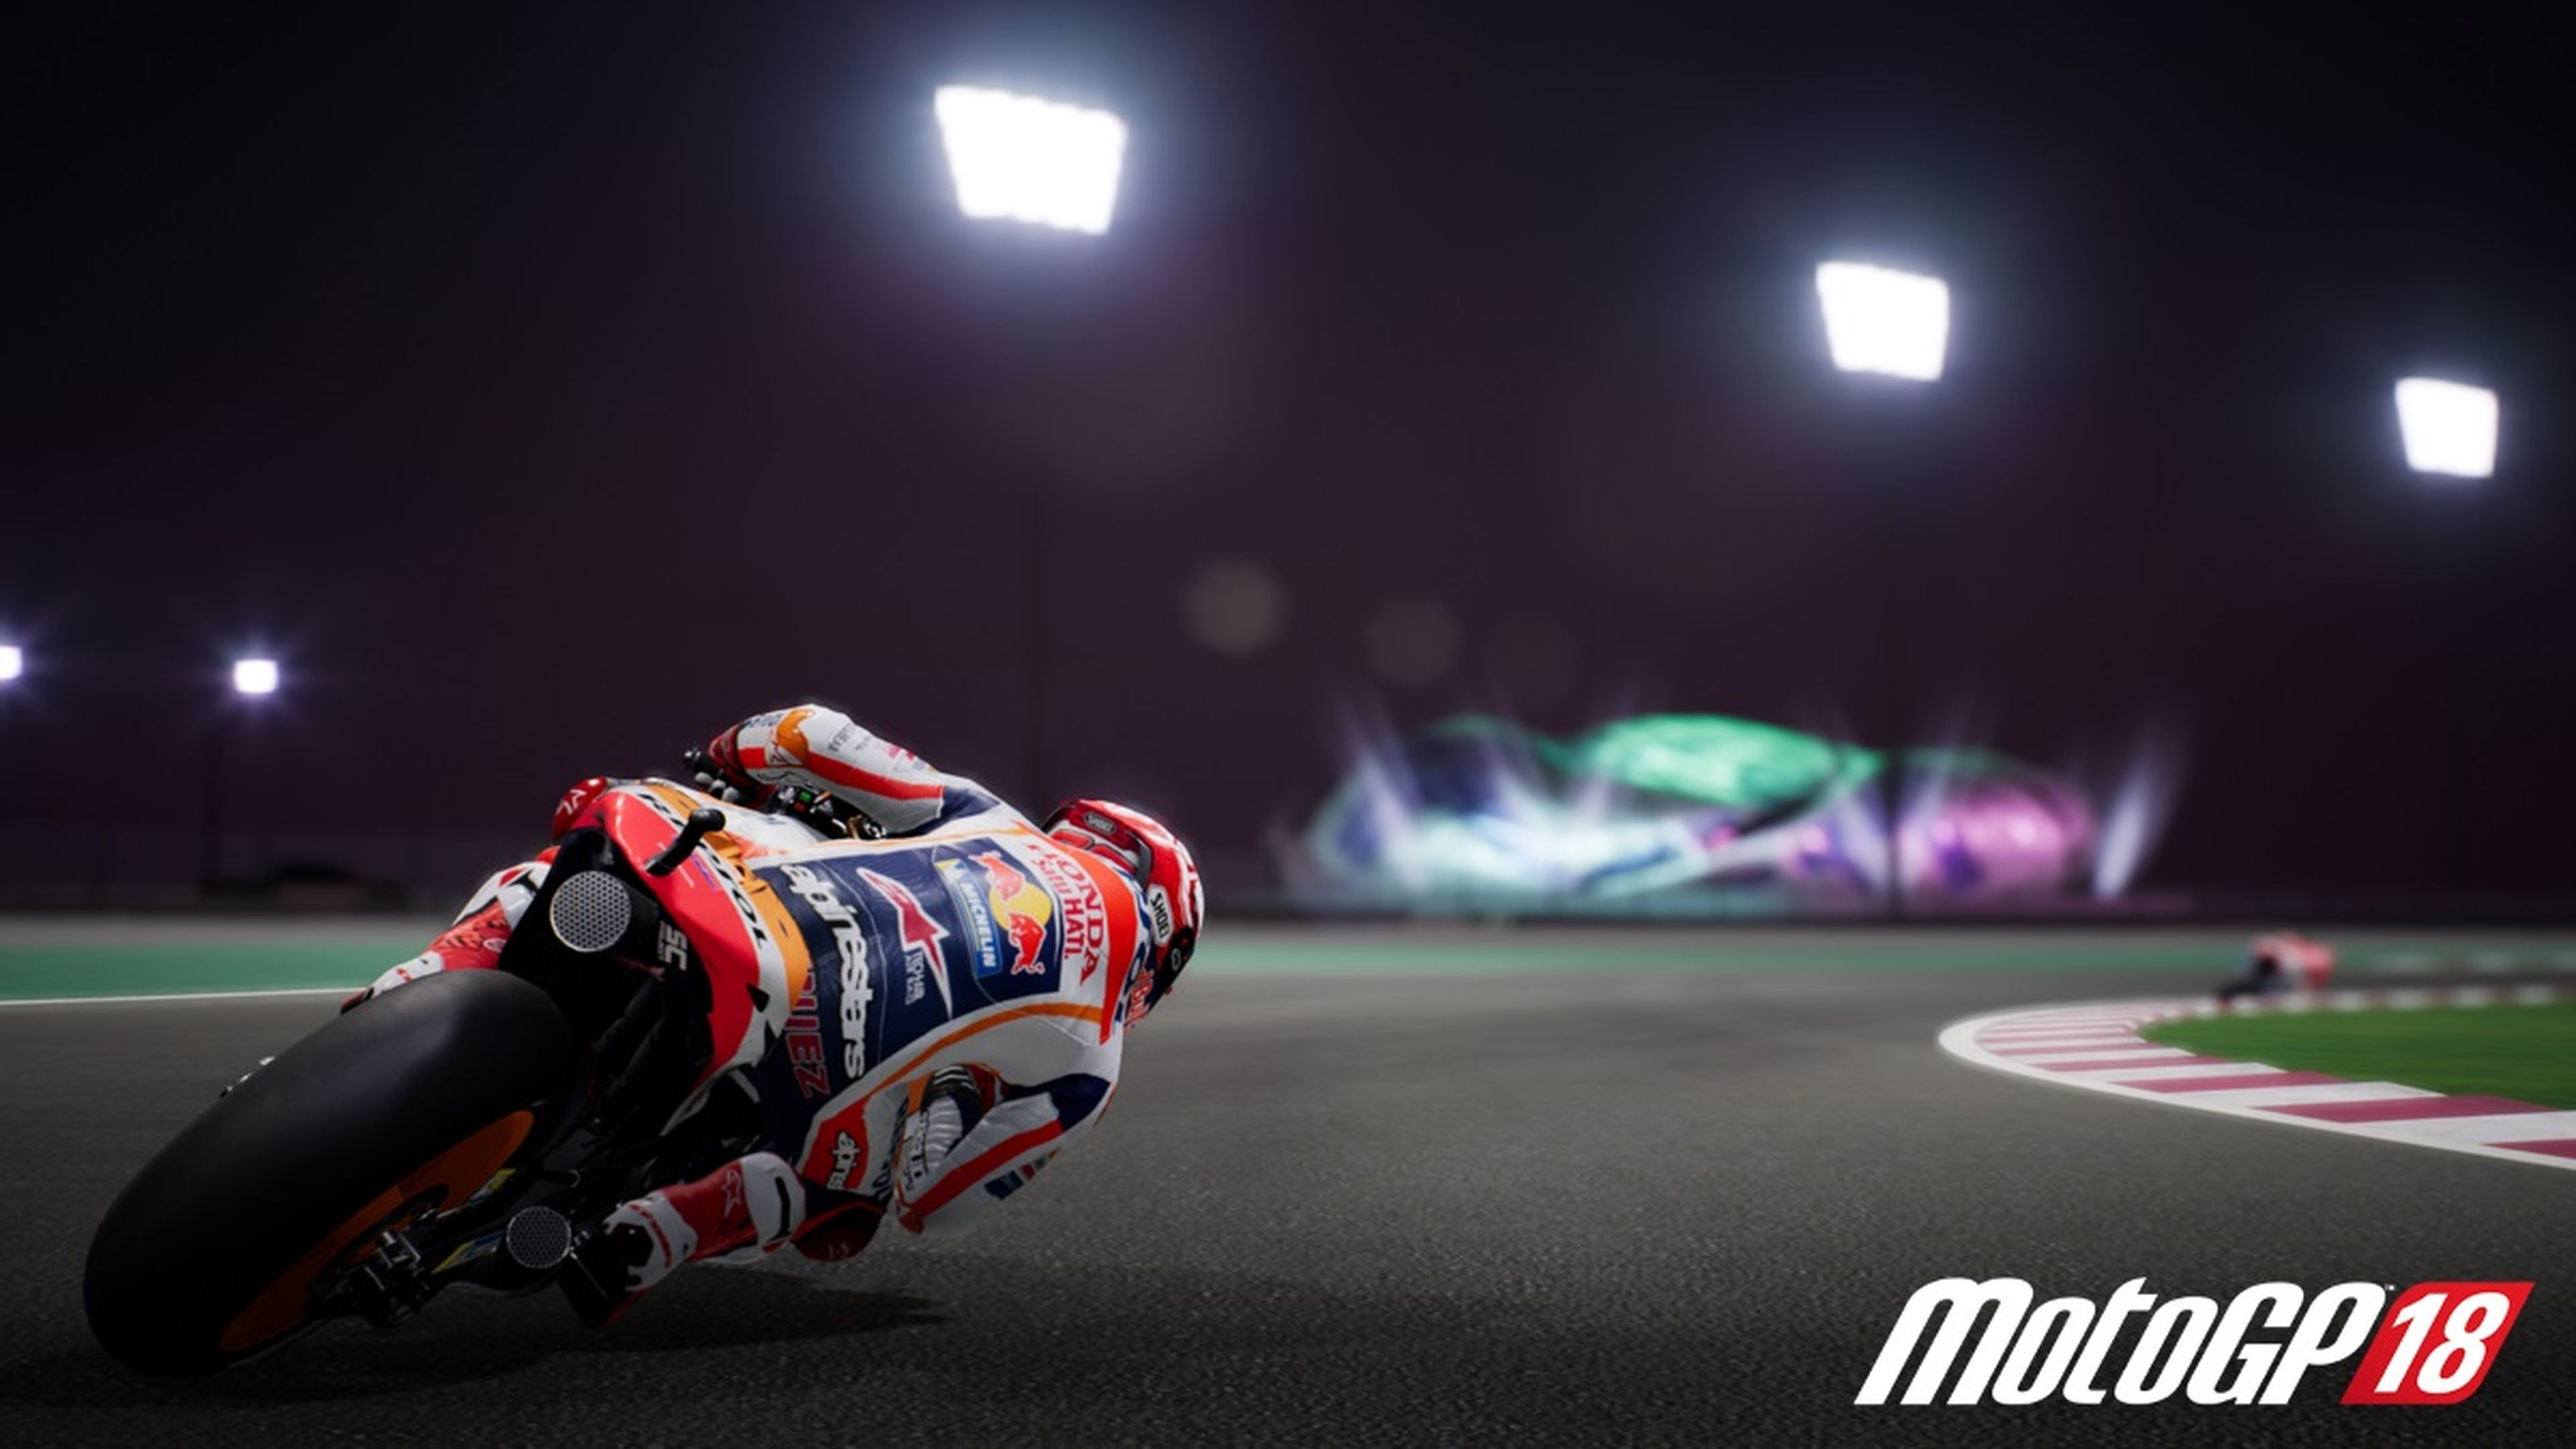 MotoGP 18, juego de motos